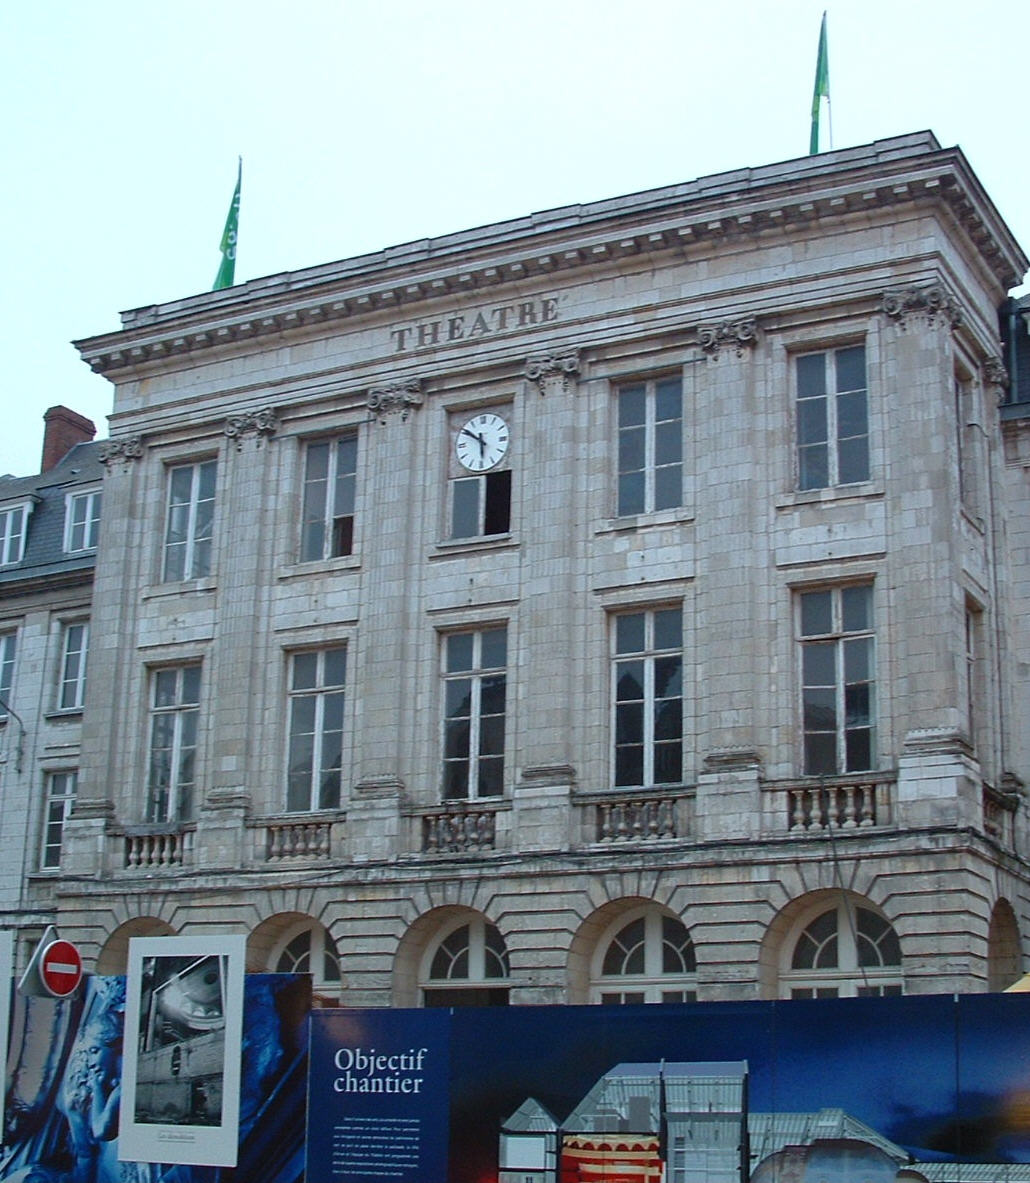 Arras: Le théâtre construit selon les plans d'Adrien Gillet. Inauguré le 30.11.1785 